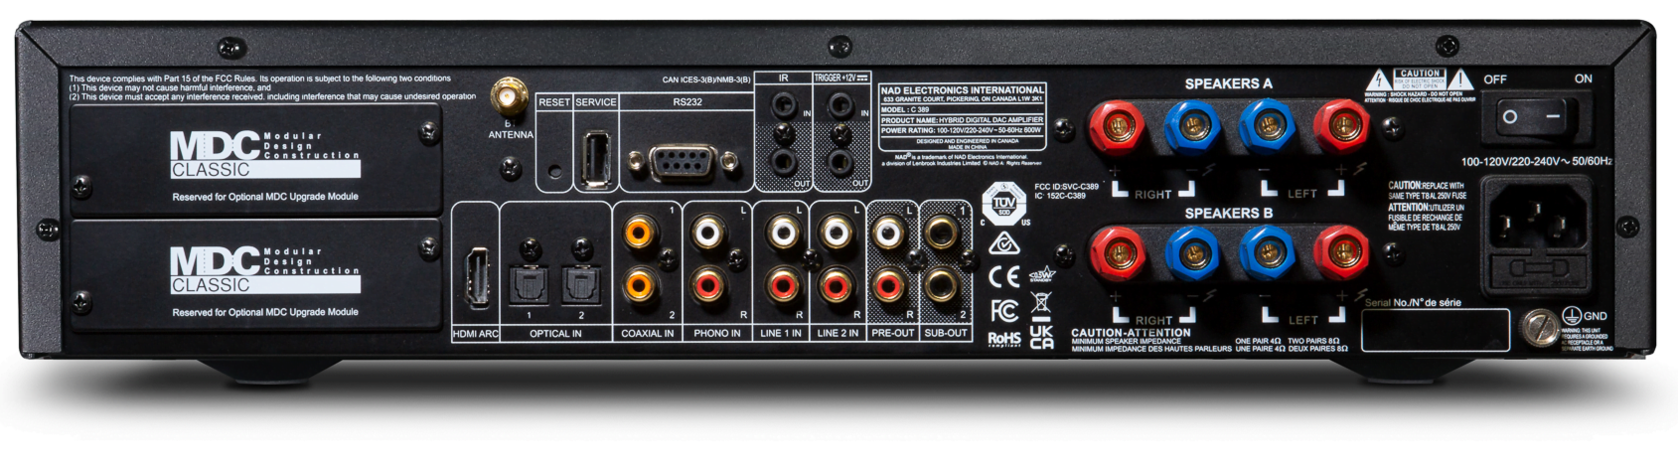 NAD C389 Hybrid Digital DAC amplifier